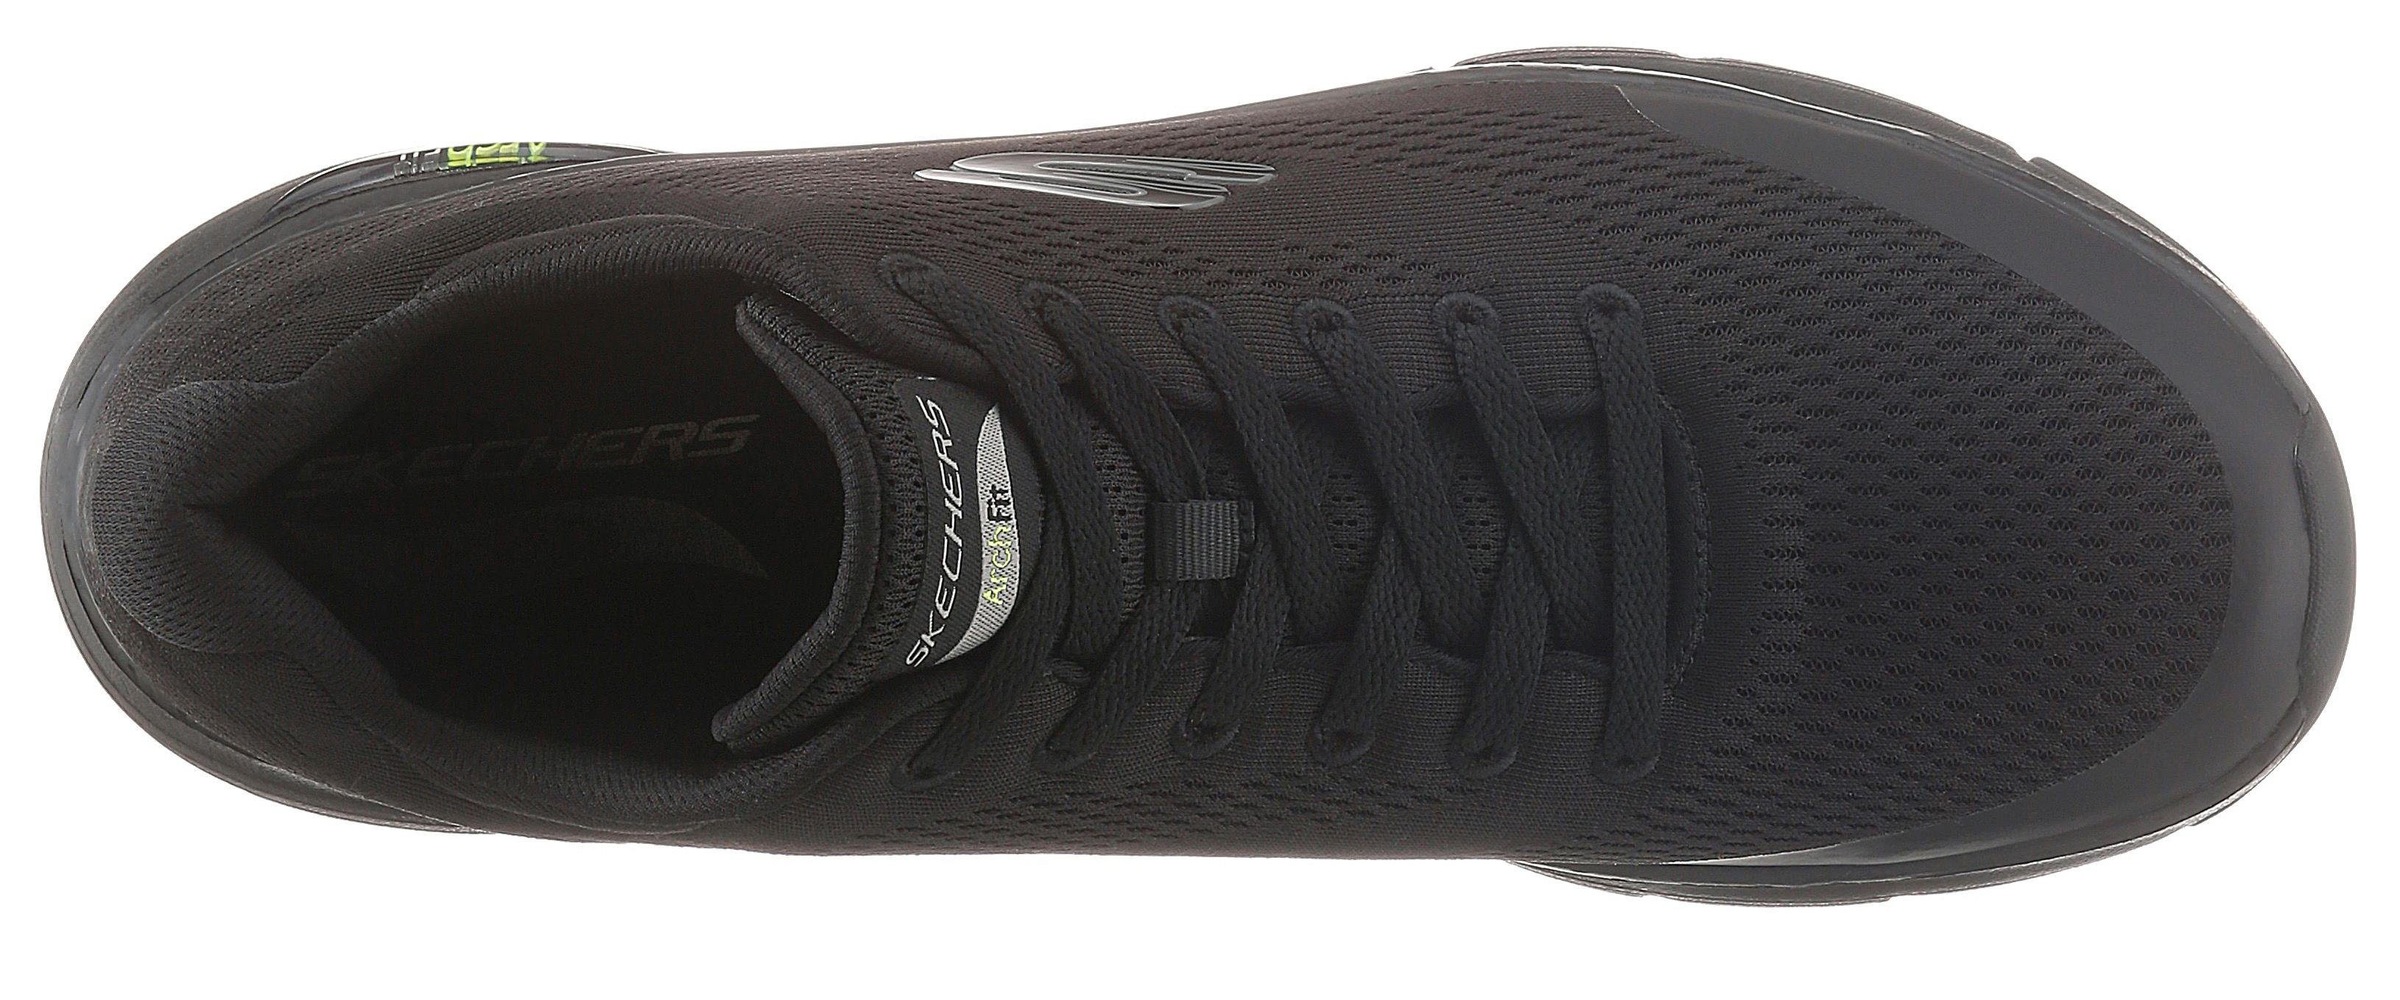 Arch entdecken Jelmoli-Online ❤ Sneaker »Arch Fit-Funktion komfortabler im Fit«, Shop mit Skechers